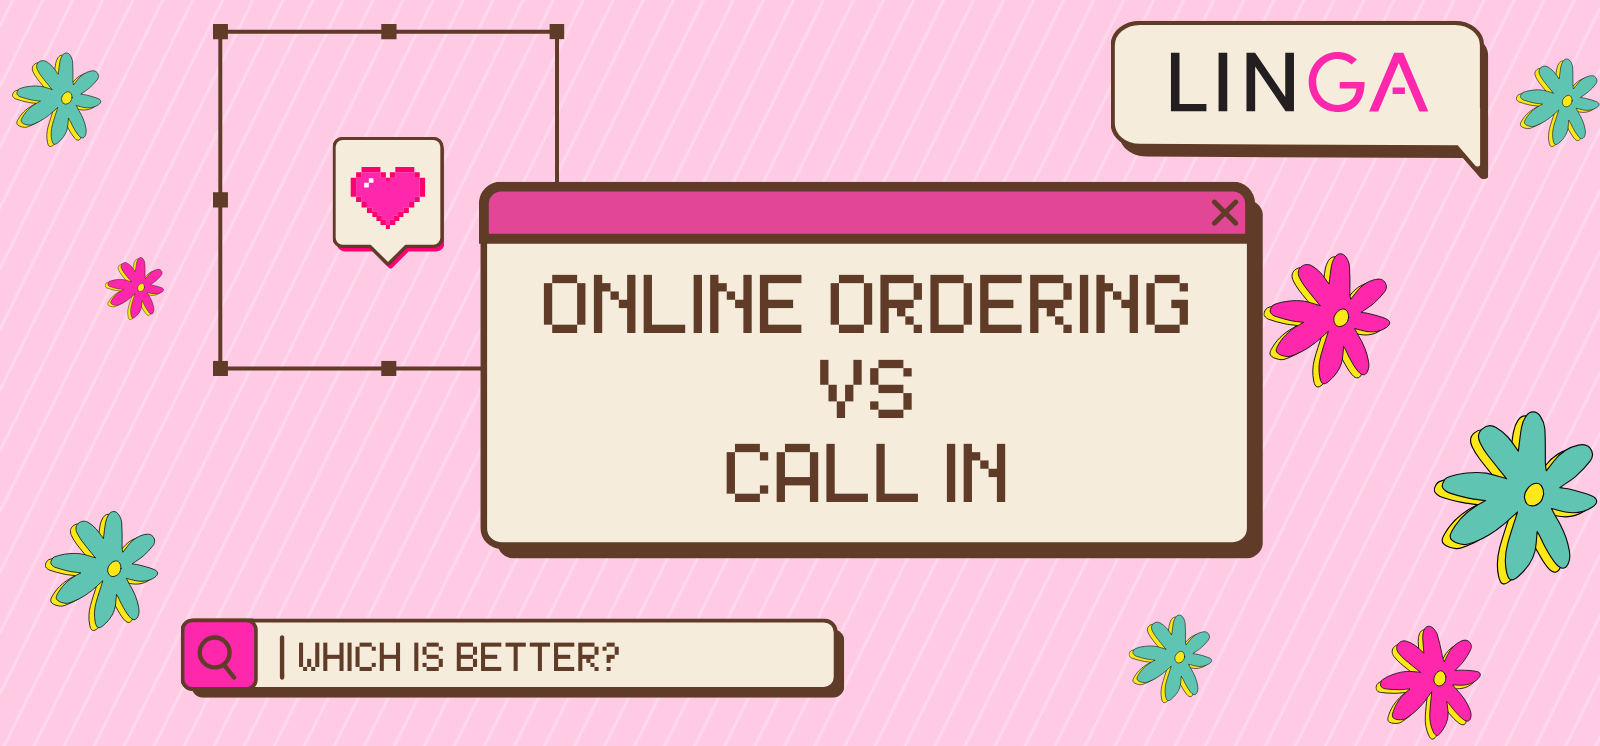 Online Ordering Vs Call in Ordering